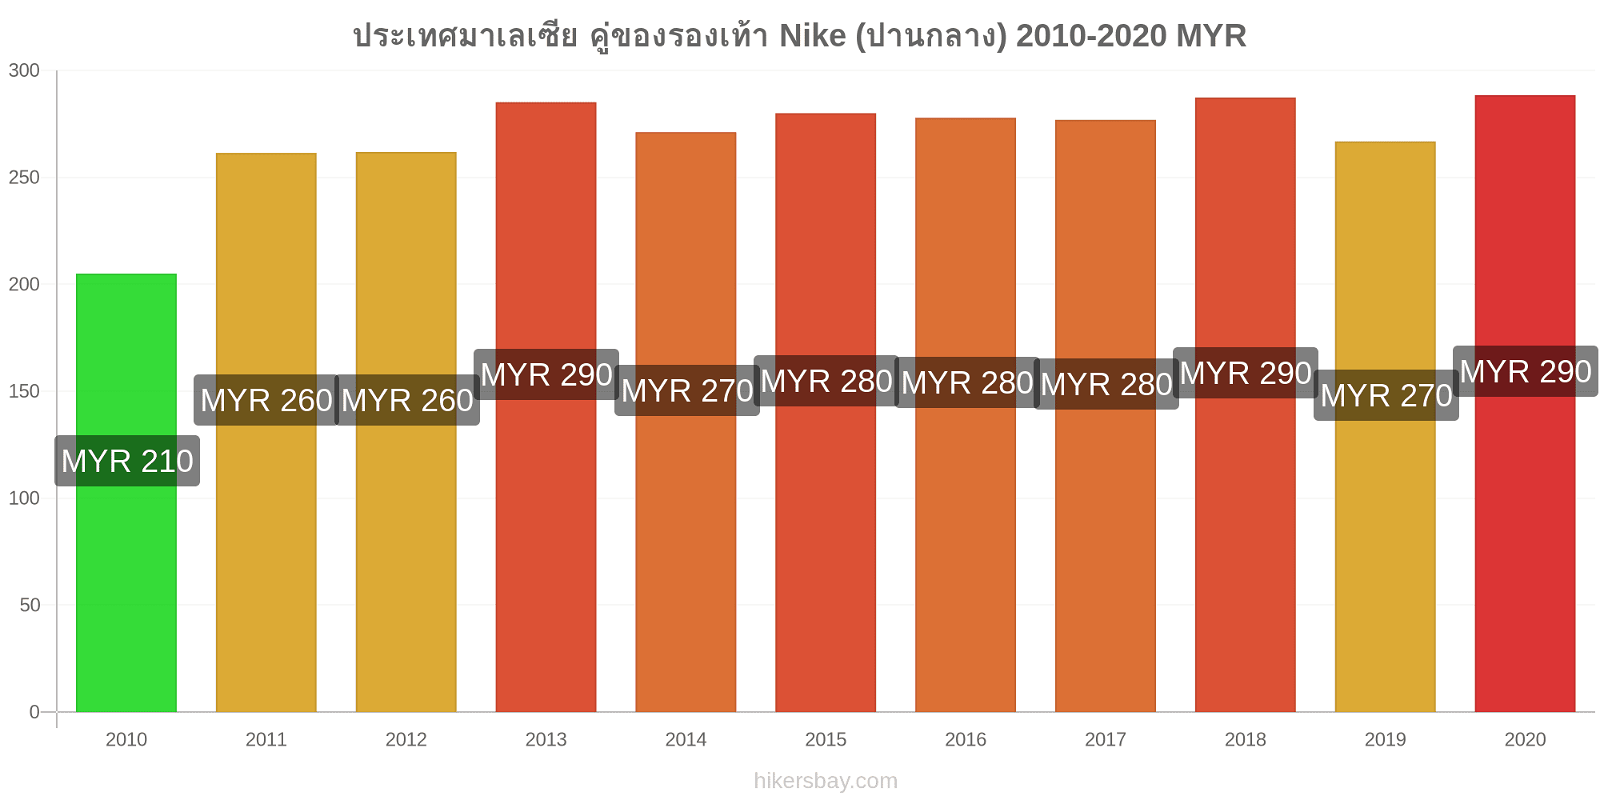 ประเทศมาเลเซีย การเปลี่ยนแปลงราคา คู่ของรองเท้า Nike (ปานกลาง) hikersbay.com